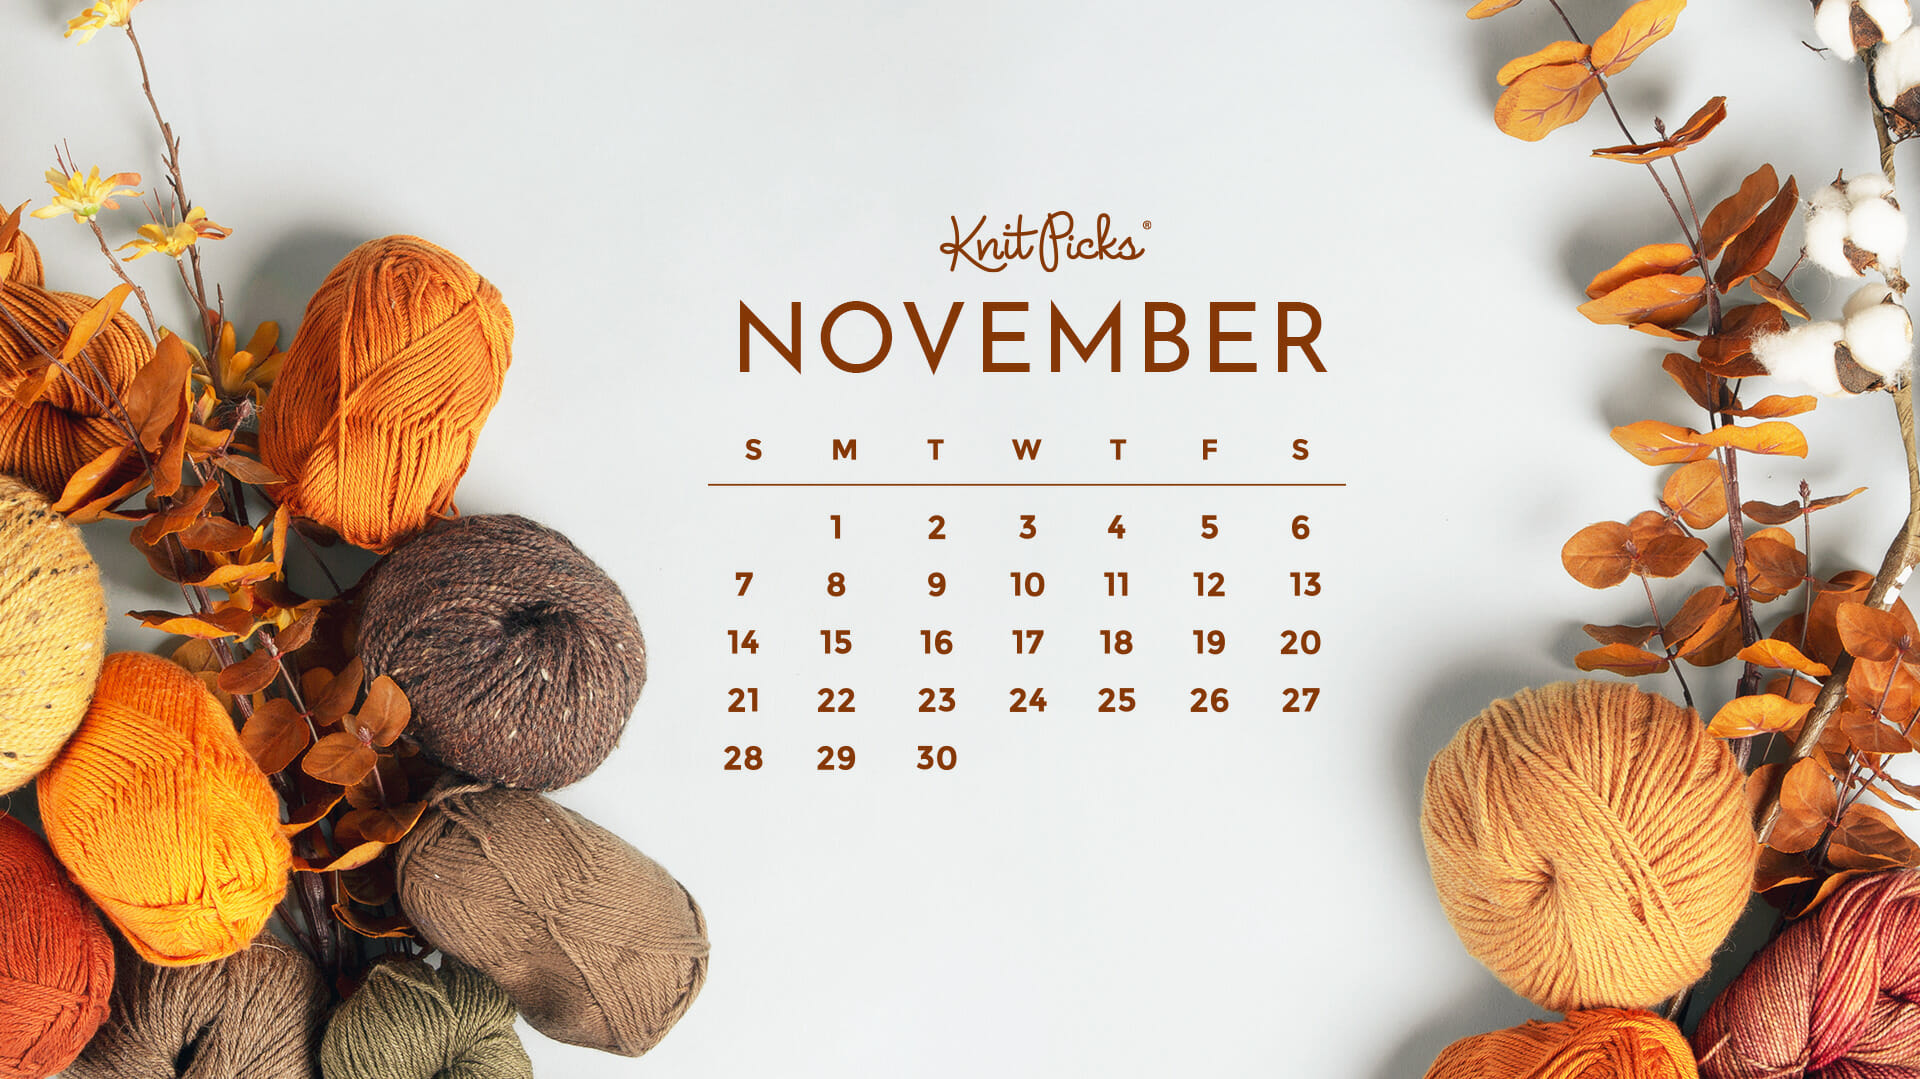 Bạn đang tìm kiếm một mẫu lịch tháng 11 độc đáo để ghi chú các sự kiện quan trọng trong tháng? Hãy tải ngay mẫu lịch tháng 11 miễn phí này và thêm vào để tạo ra một lịch đẹp, sáng tạo và cá nhân hóa cho riêng mình.